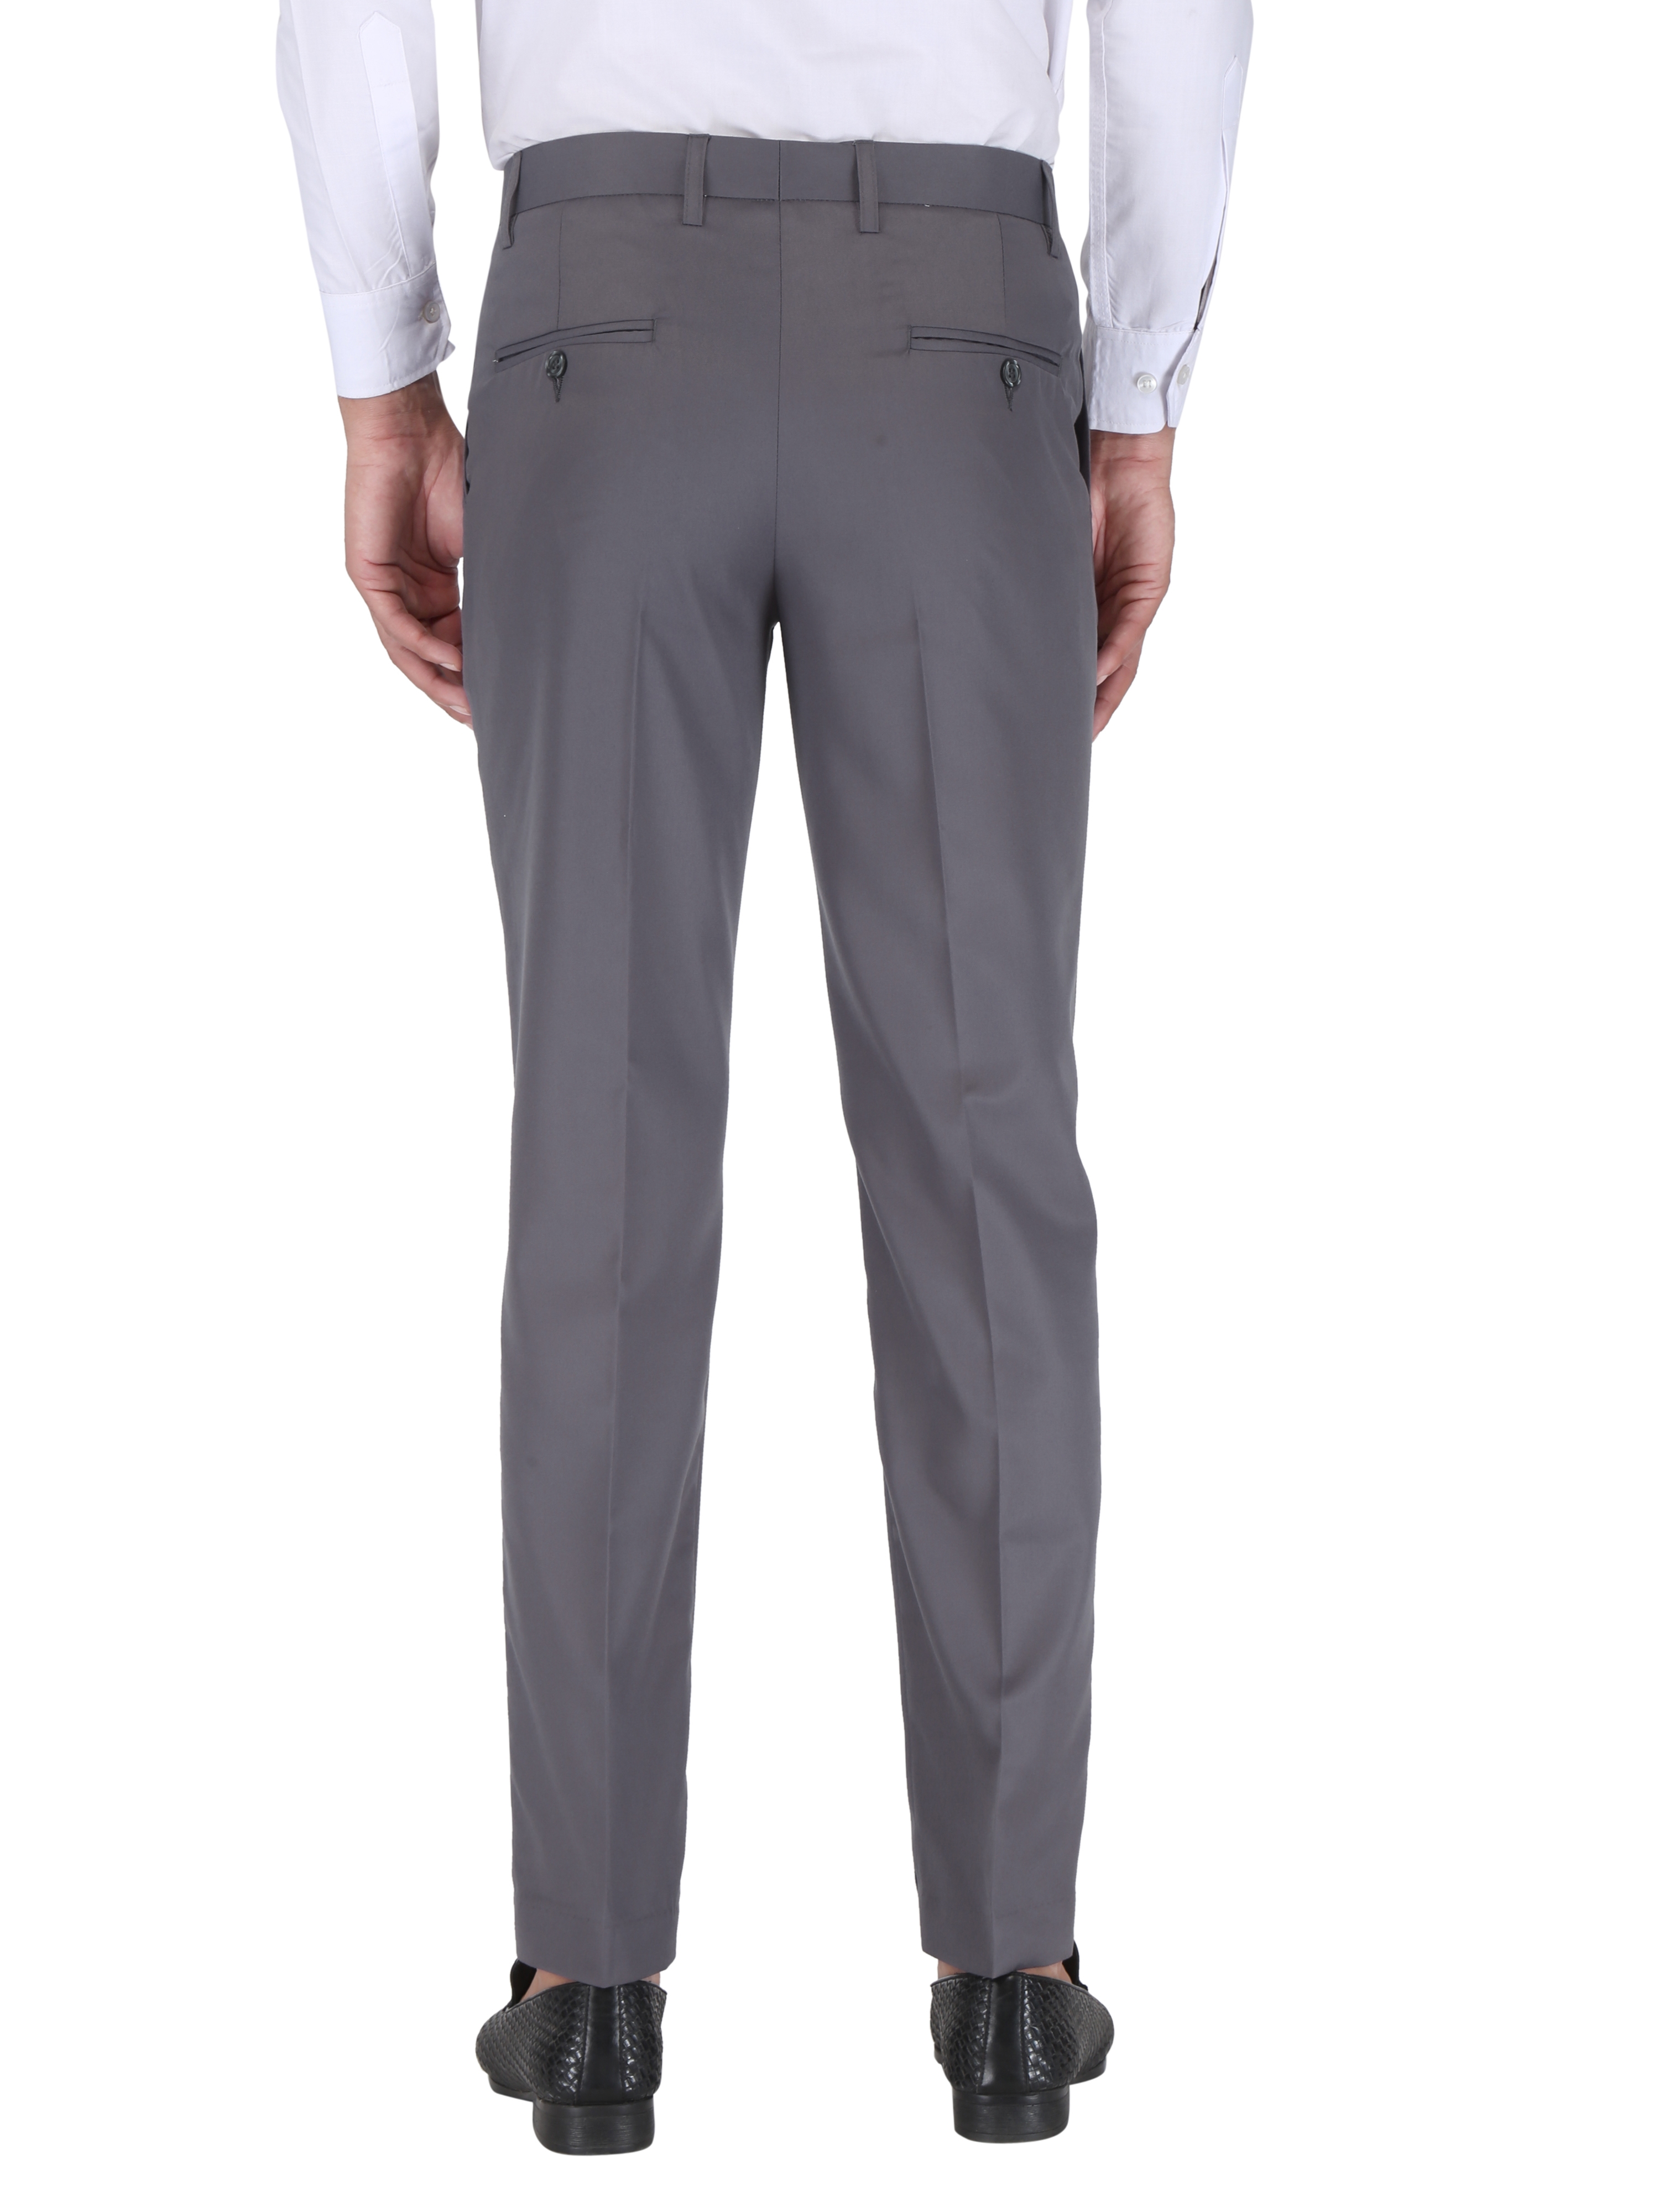 CHARLIE CARLOS | Dark Grey Men's Contemporary Reguler Leg Business Pants in Virgin PolyViscose Regular Fit Formal Trousers/Pants 1